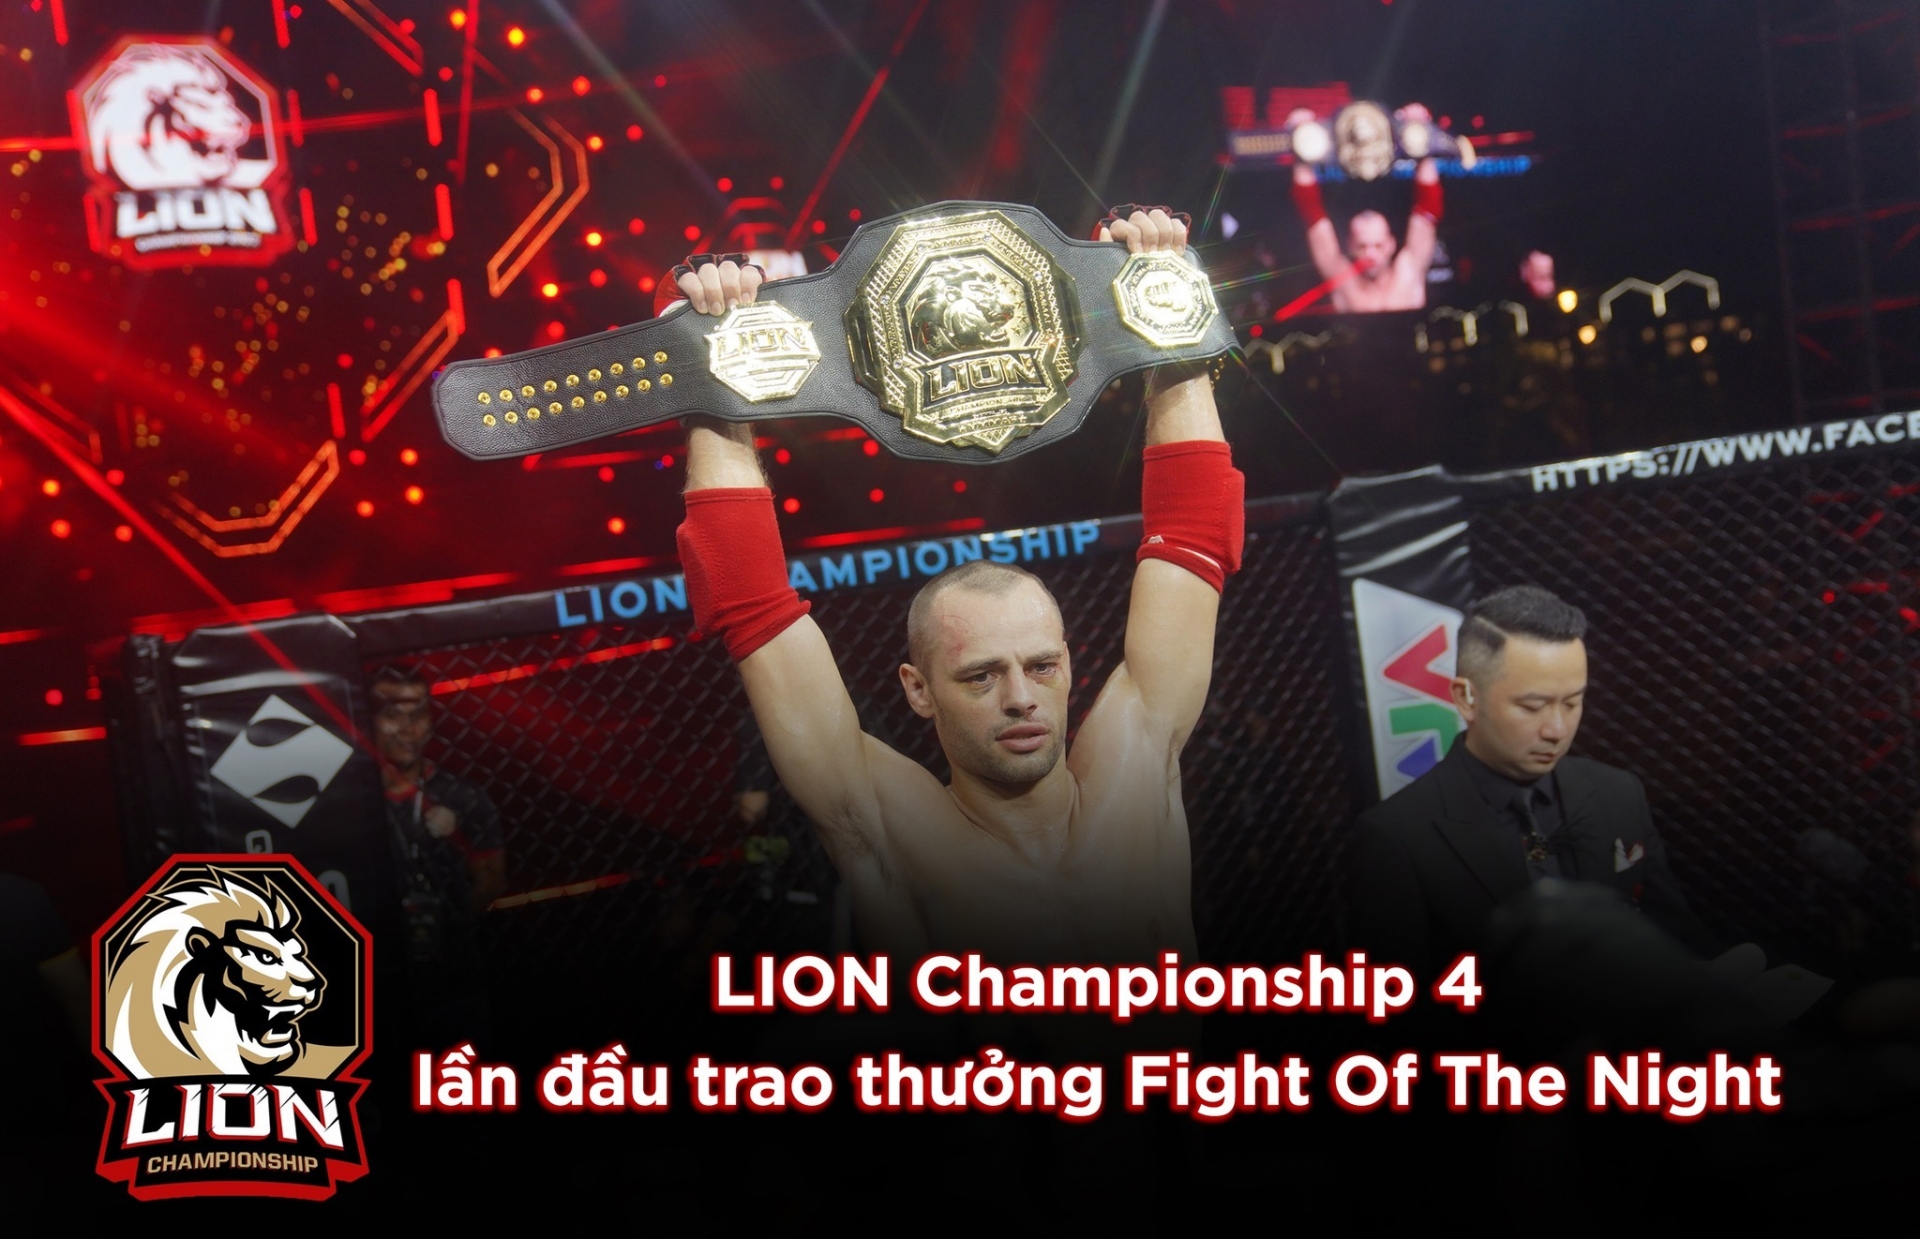 Xác định chủ nhân giải 'Fight Of The Night' của MMA LION Championship 4 264441